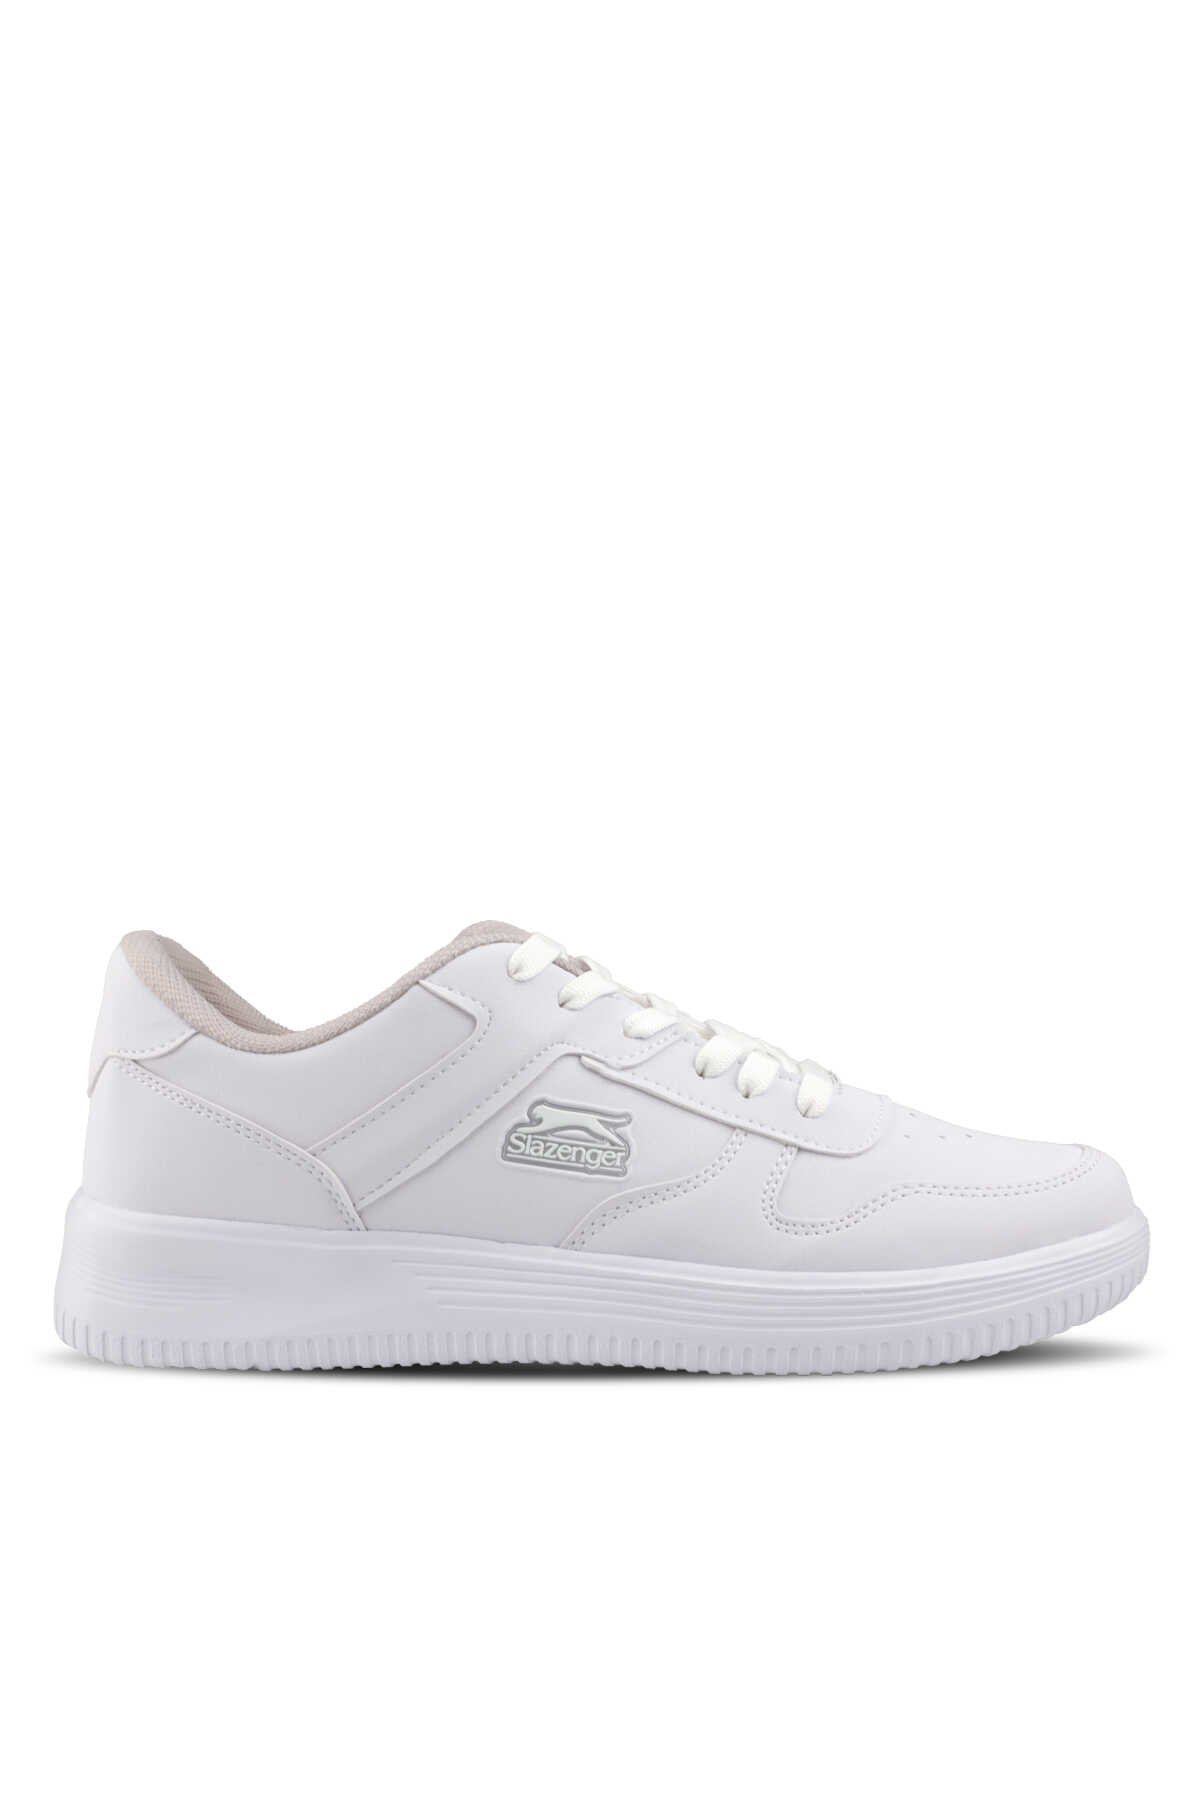 Slazenger - Slazenger ELIORA I Sneaker Erkek Ayakkabı Beyaz